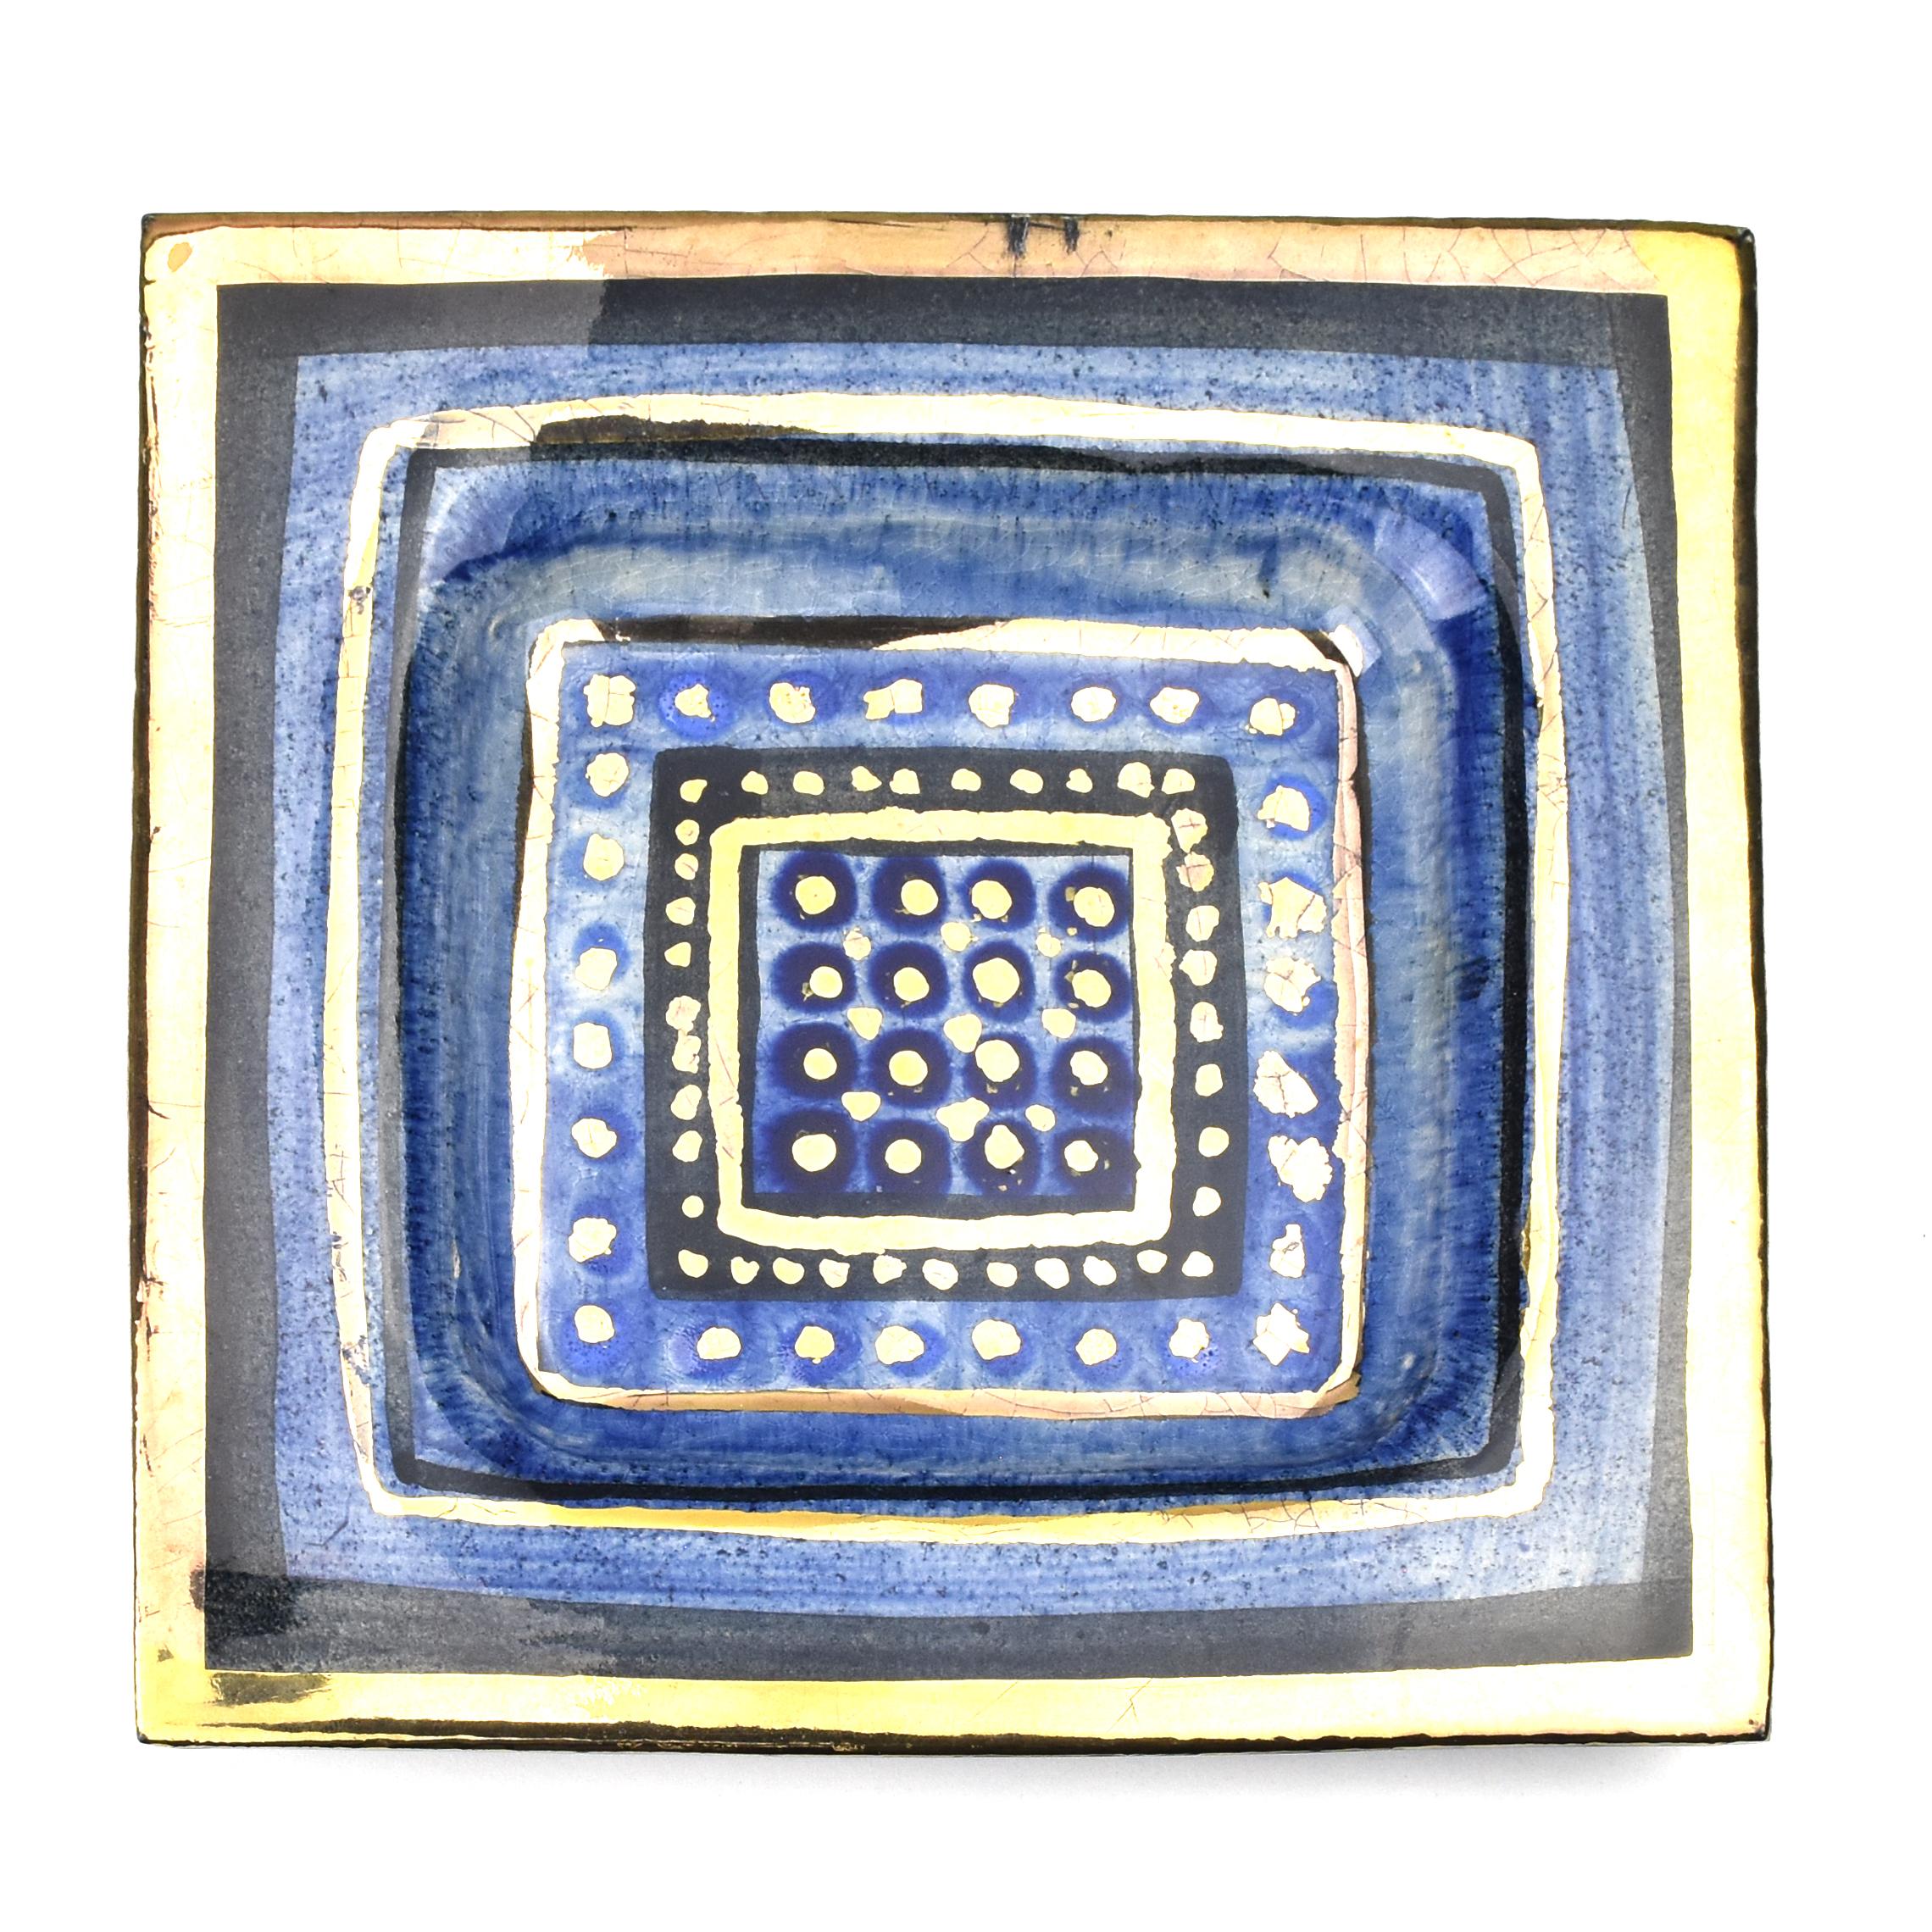 Plat décoratif en céramique ou vide-poche du céramiste Georges Pelletier, France.

Bol en céramique fabriqué à la main, avec un design attrayant dans les tons de bleu avec des lignes noires et des détails dorés et une finition brillante. Monté avec